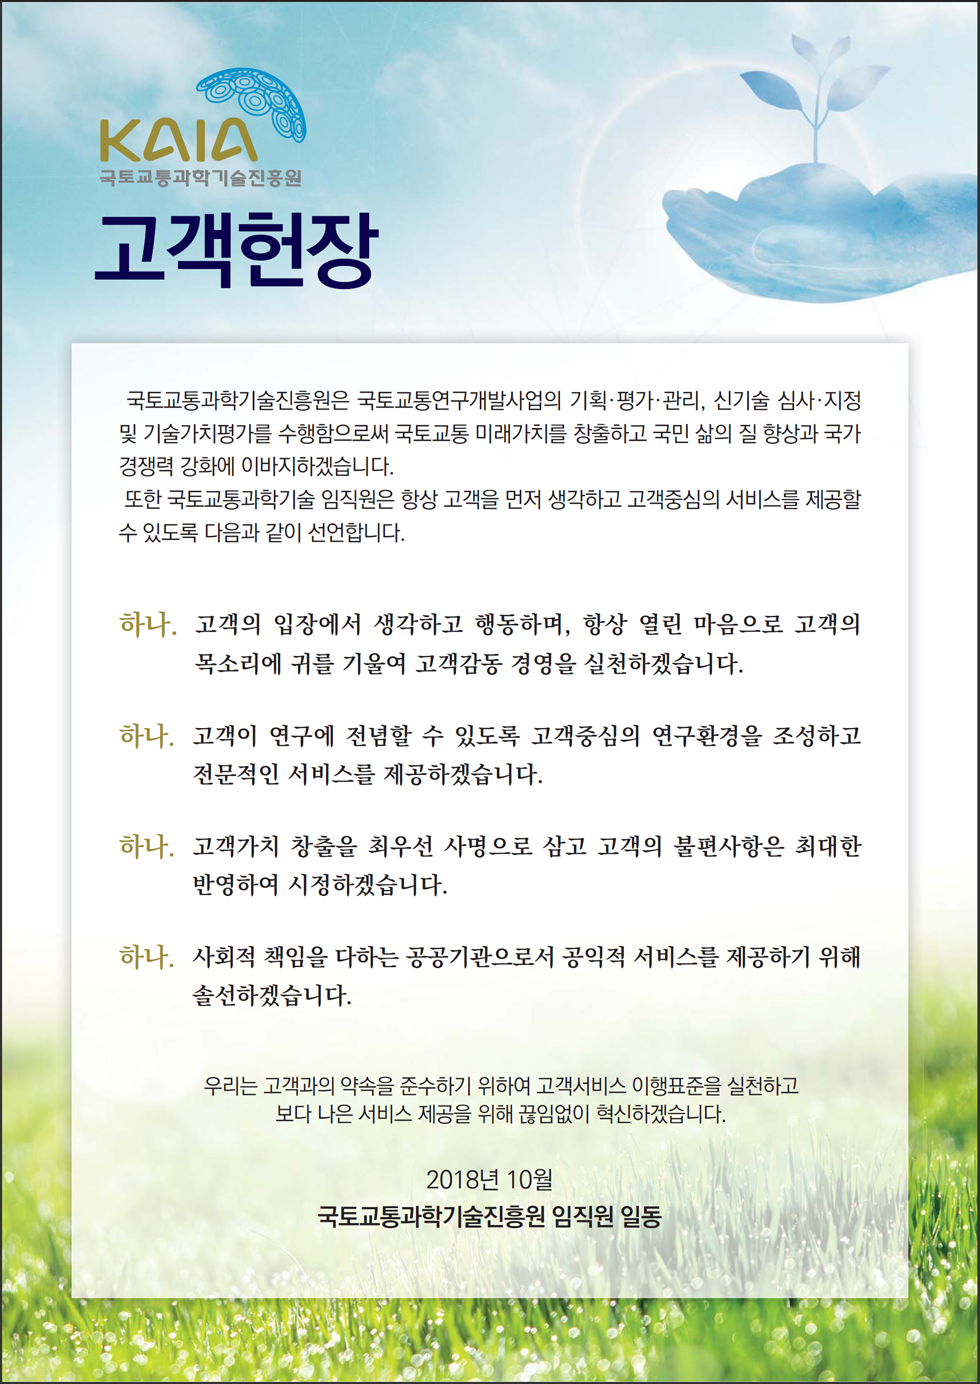 KAIA 국토교통과학기술진흥원 고객헌장